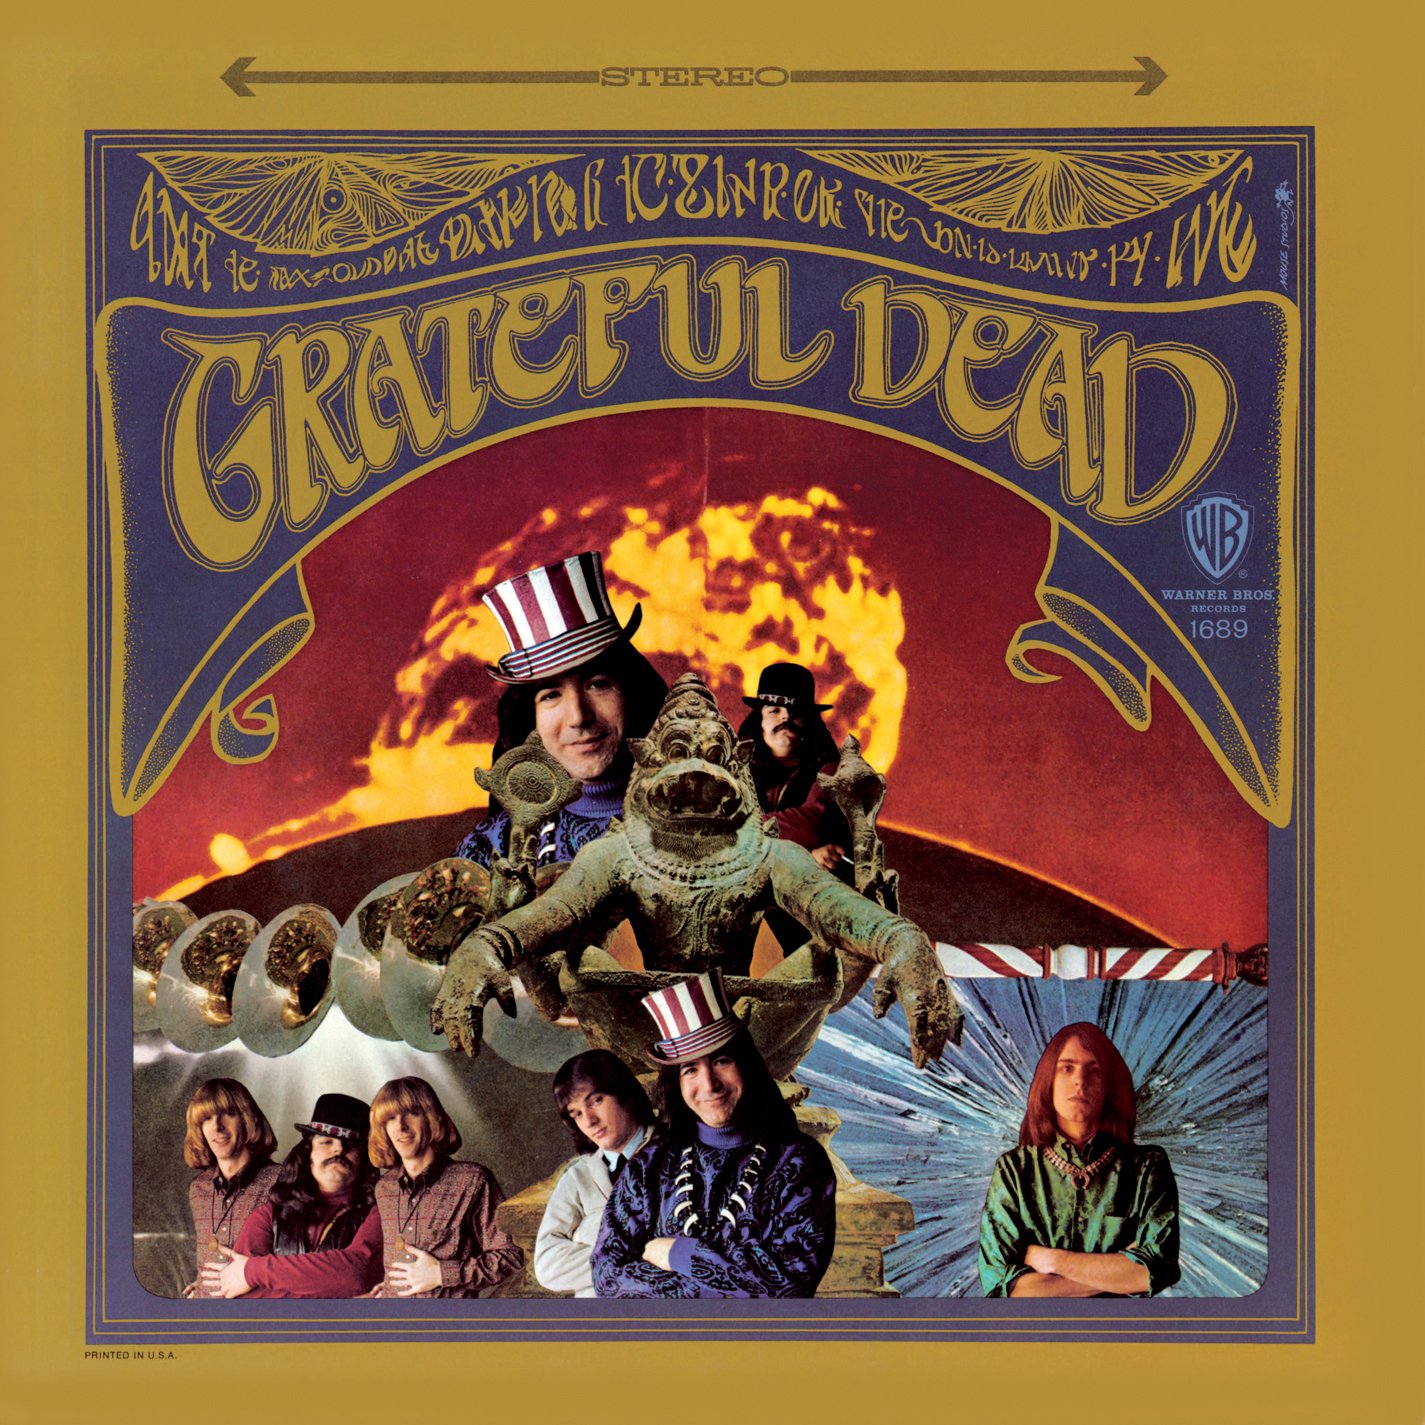 Grateful Dead, THE GRATEFUL DEAD, CD